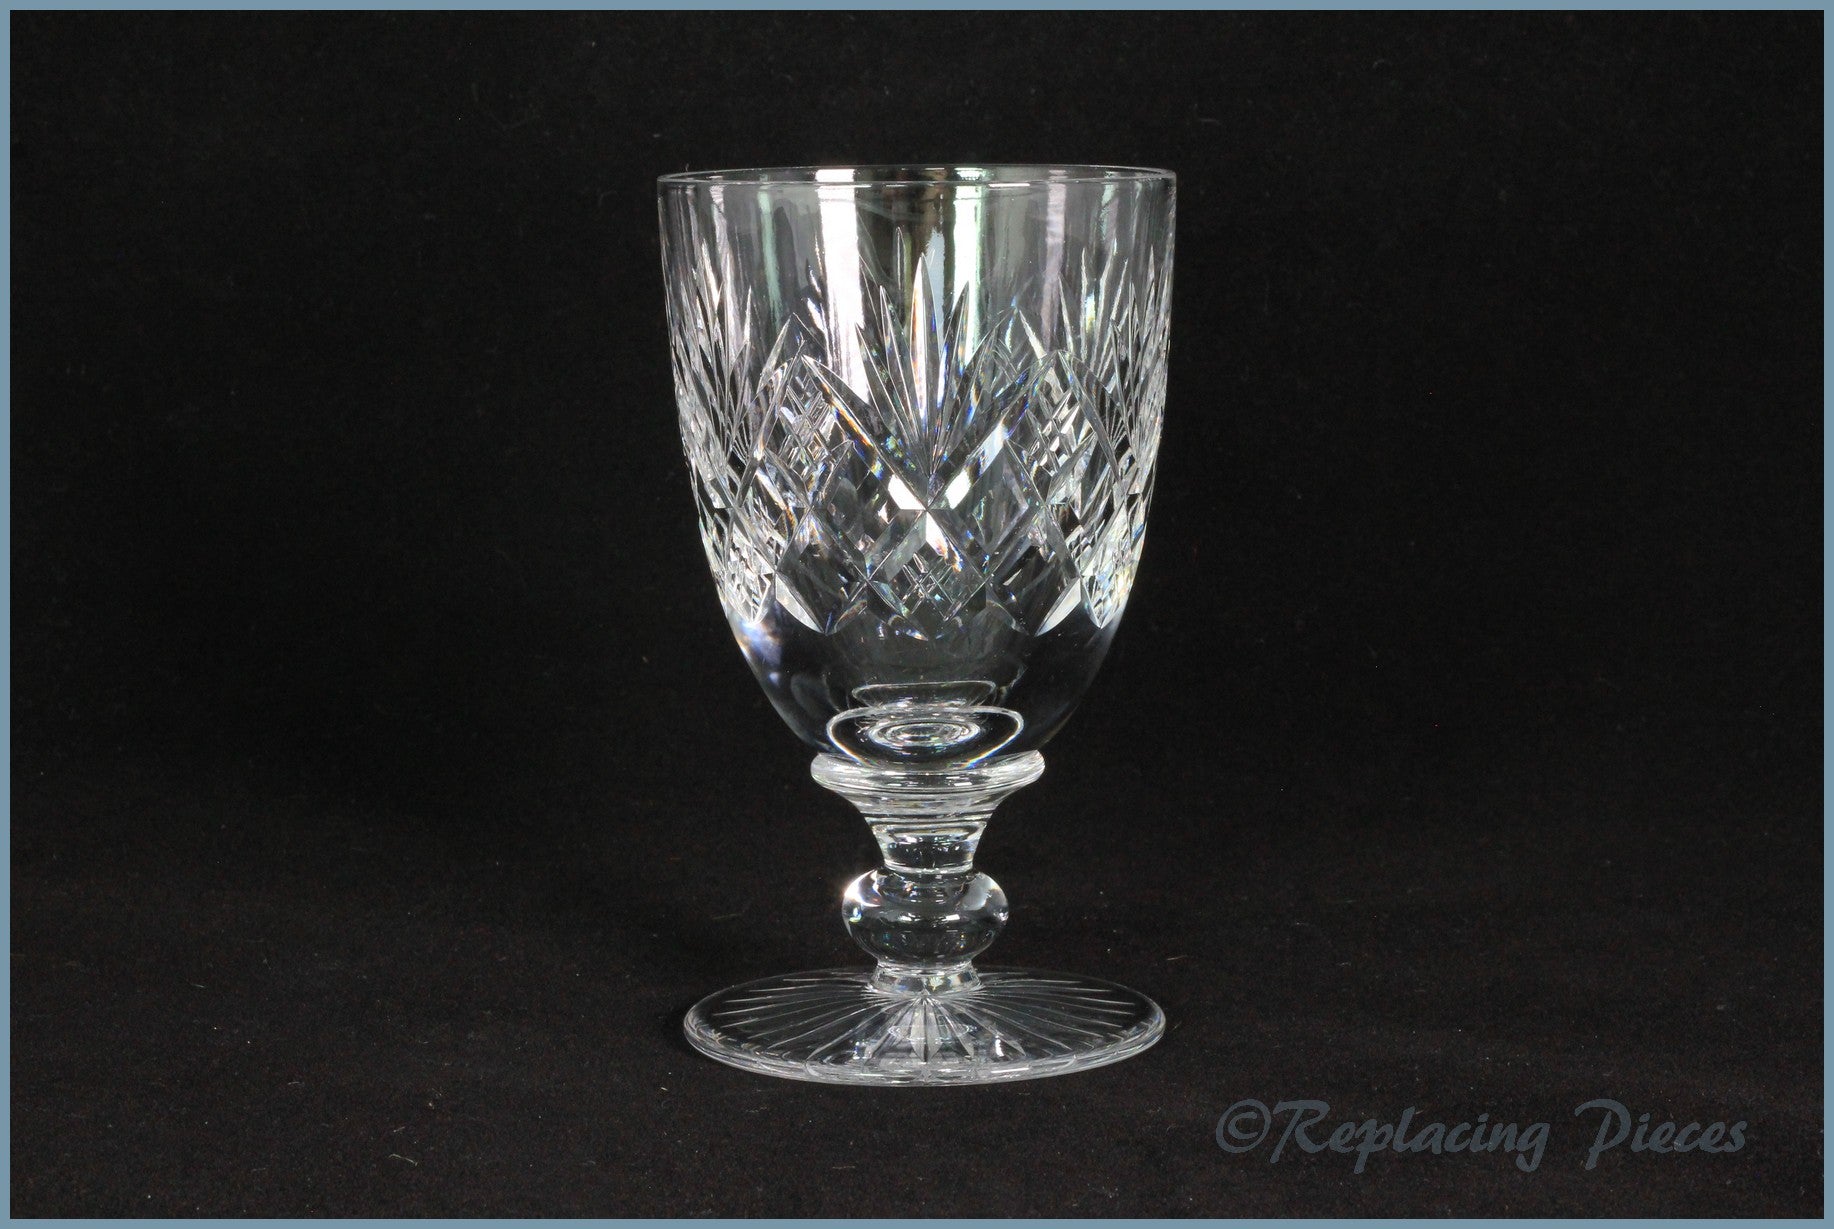 Tudor - Knyghton - White Wine Glass